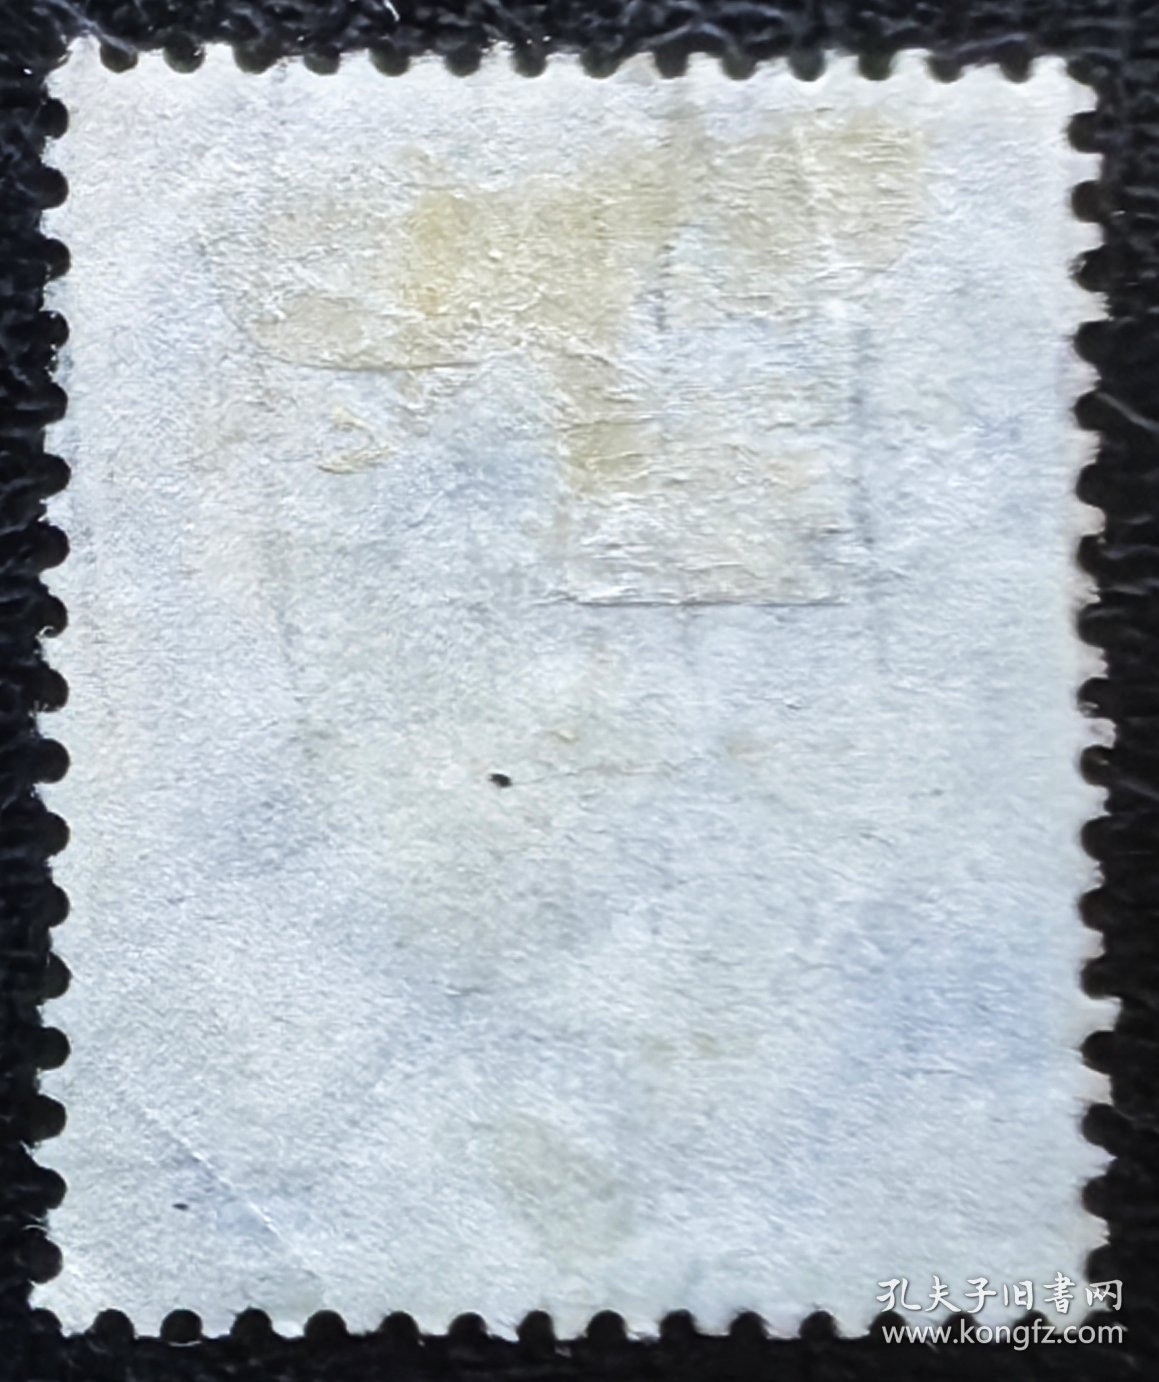 2-31#，德国1933年信销邮票1枚。腓特烈大帝。人物肖像。2015斯科特目录22.5美元。